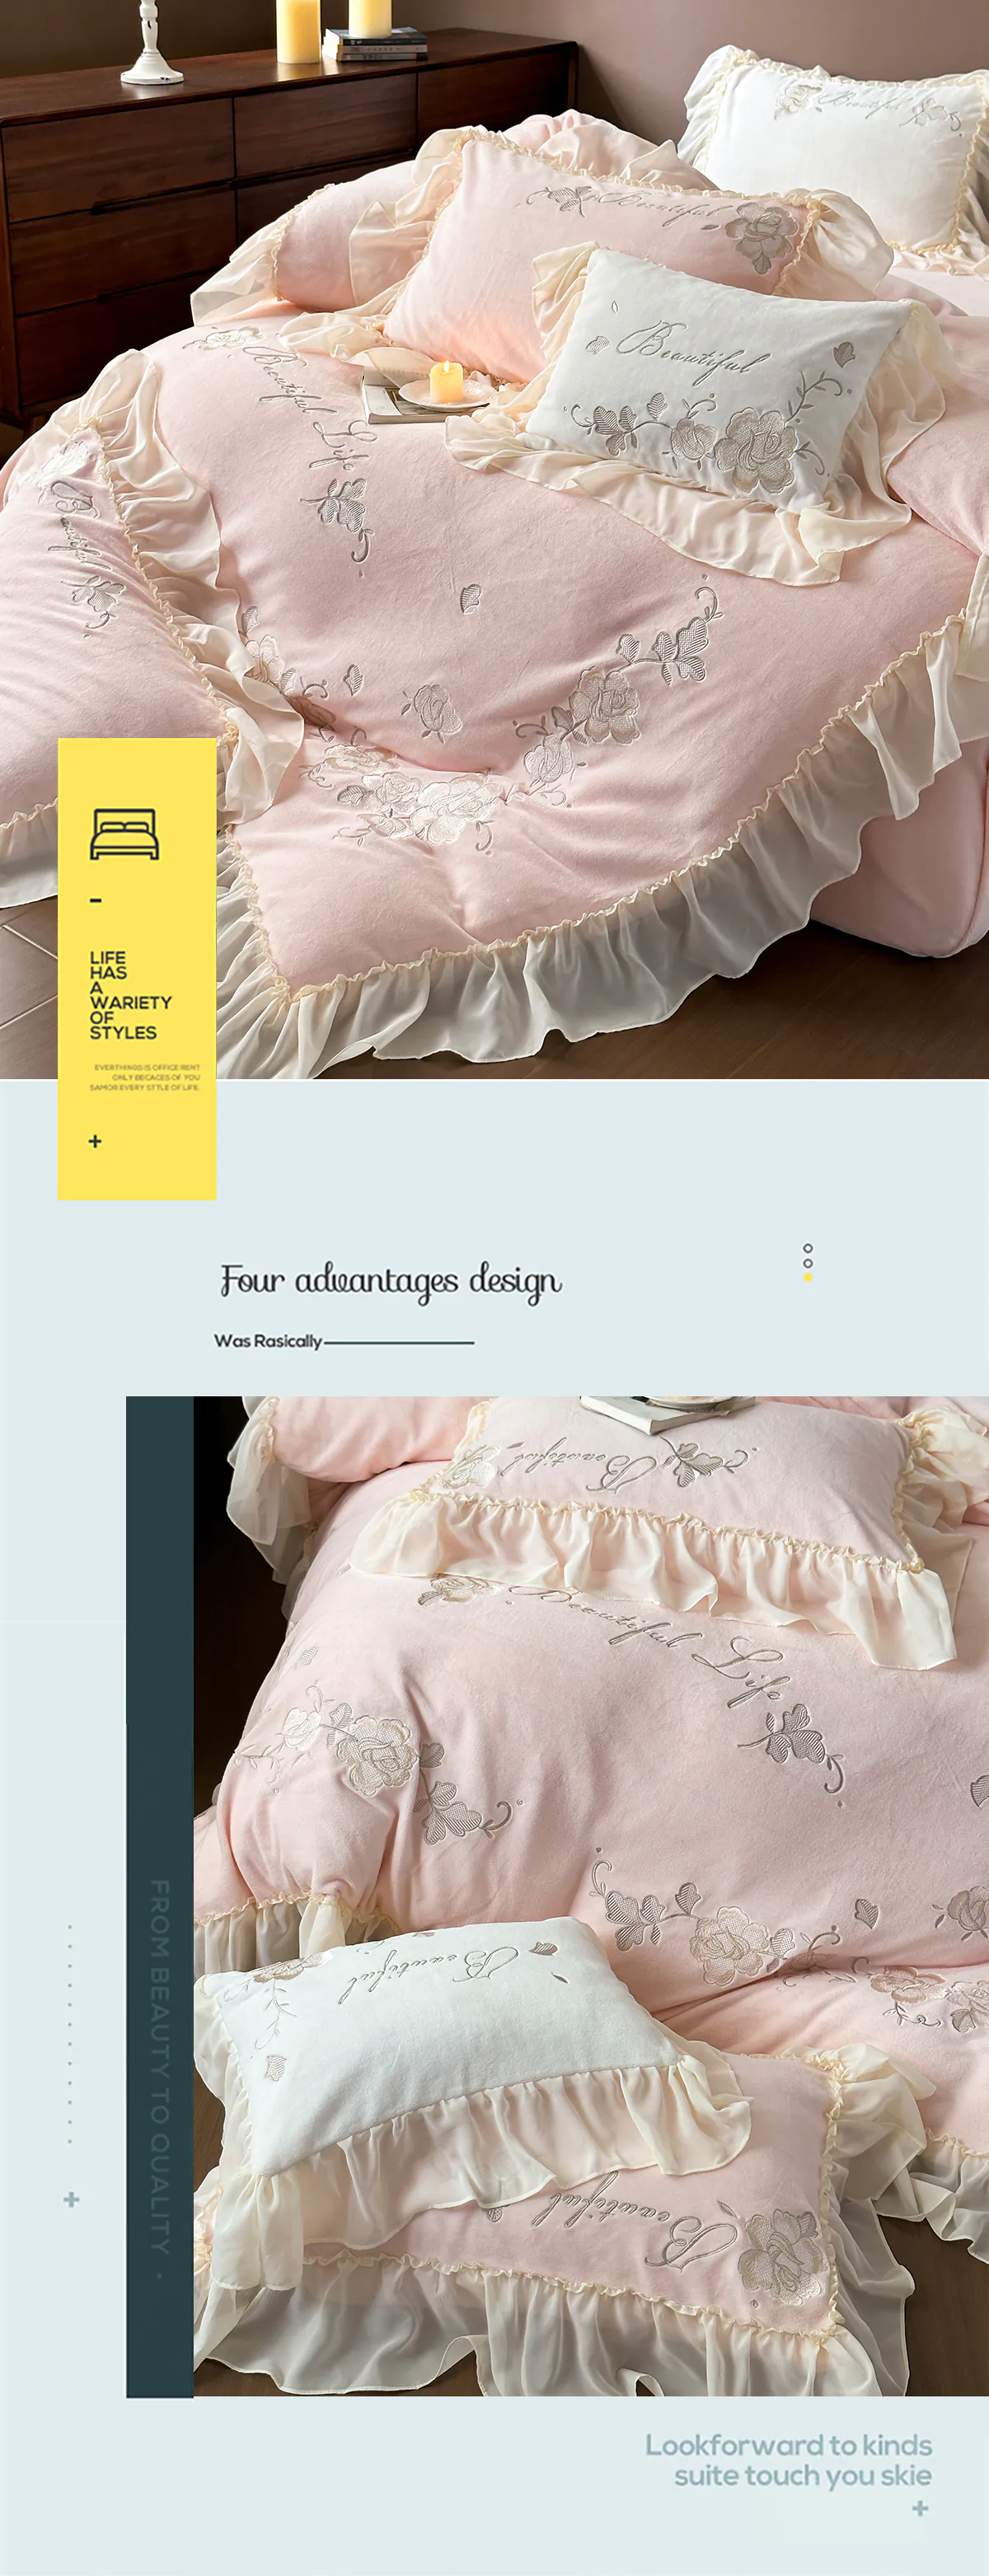 Aesthetic-Soft-Milk-Fiber-Duvet-Cover-Bed-Sheet-Pillowcases-4-Pcs-Set11